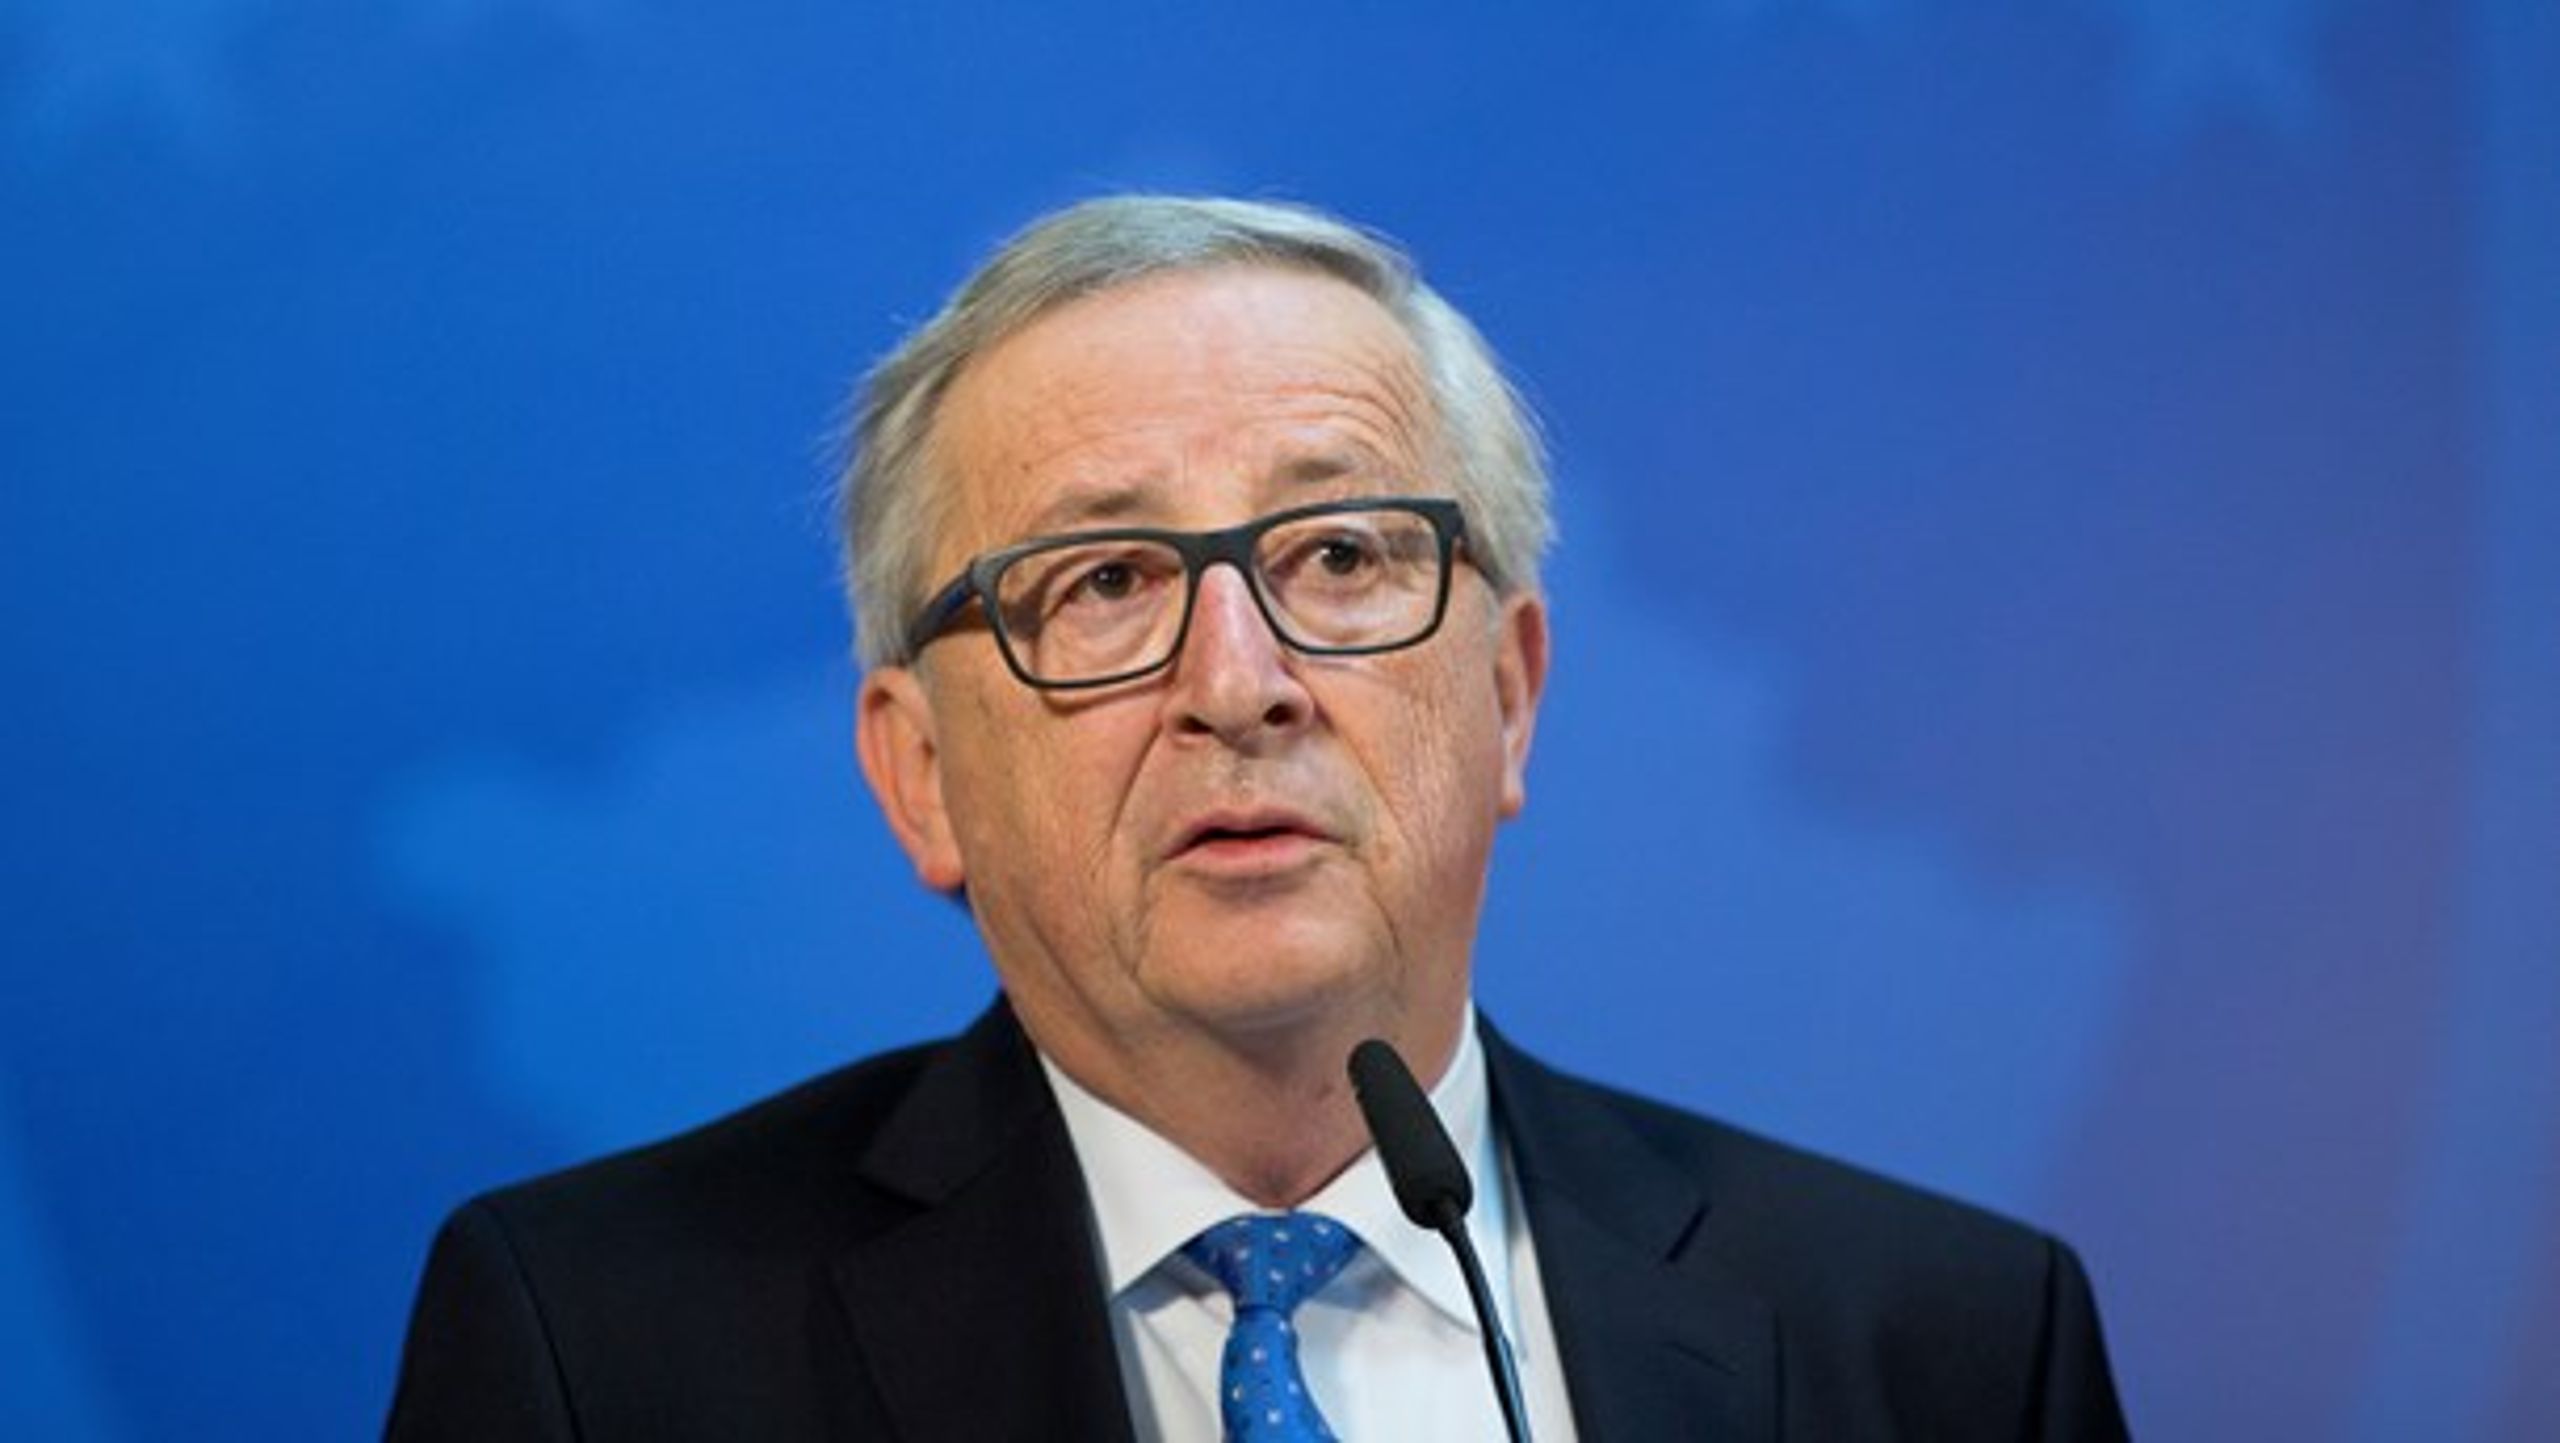 EU-kommissionen med&nbsp;Jean-Claude Juncker i spidsen præsenterer i dag sit udspil til det kommende EU-budget. Det bør indeholde langt flere midler til grøn energiinfrastruktur, skriver&nbsp;Anders Stouge.